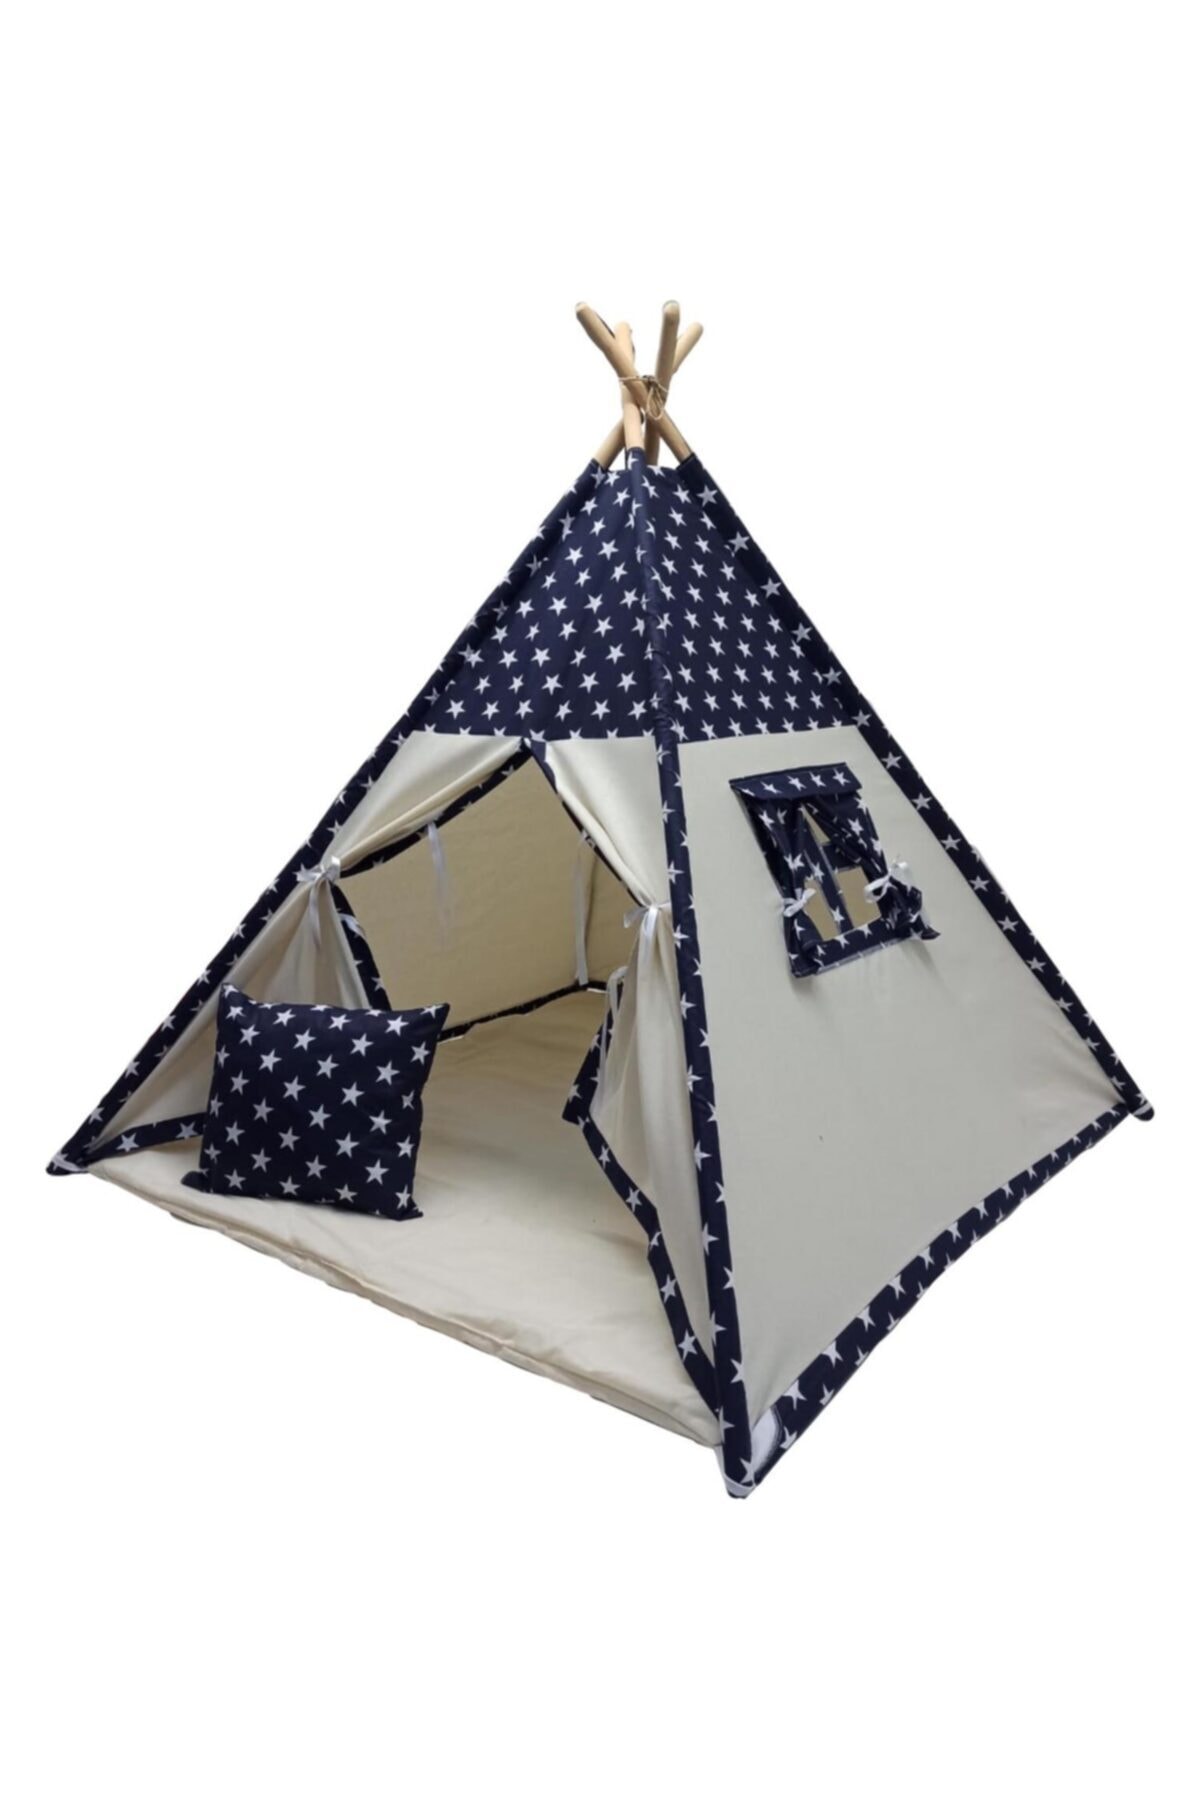 miniks Çocuk Çadırı Devrileyen Toplanmayan Çocuk Oyun Çadırı Kızıldereli Çadırı Oyun Evi